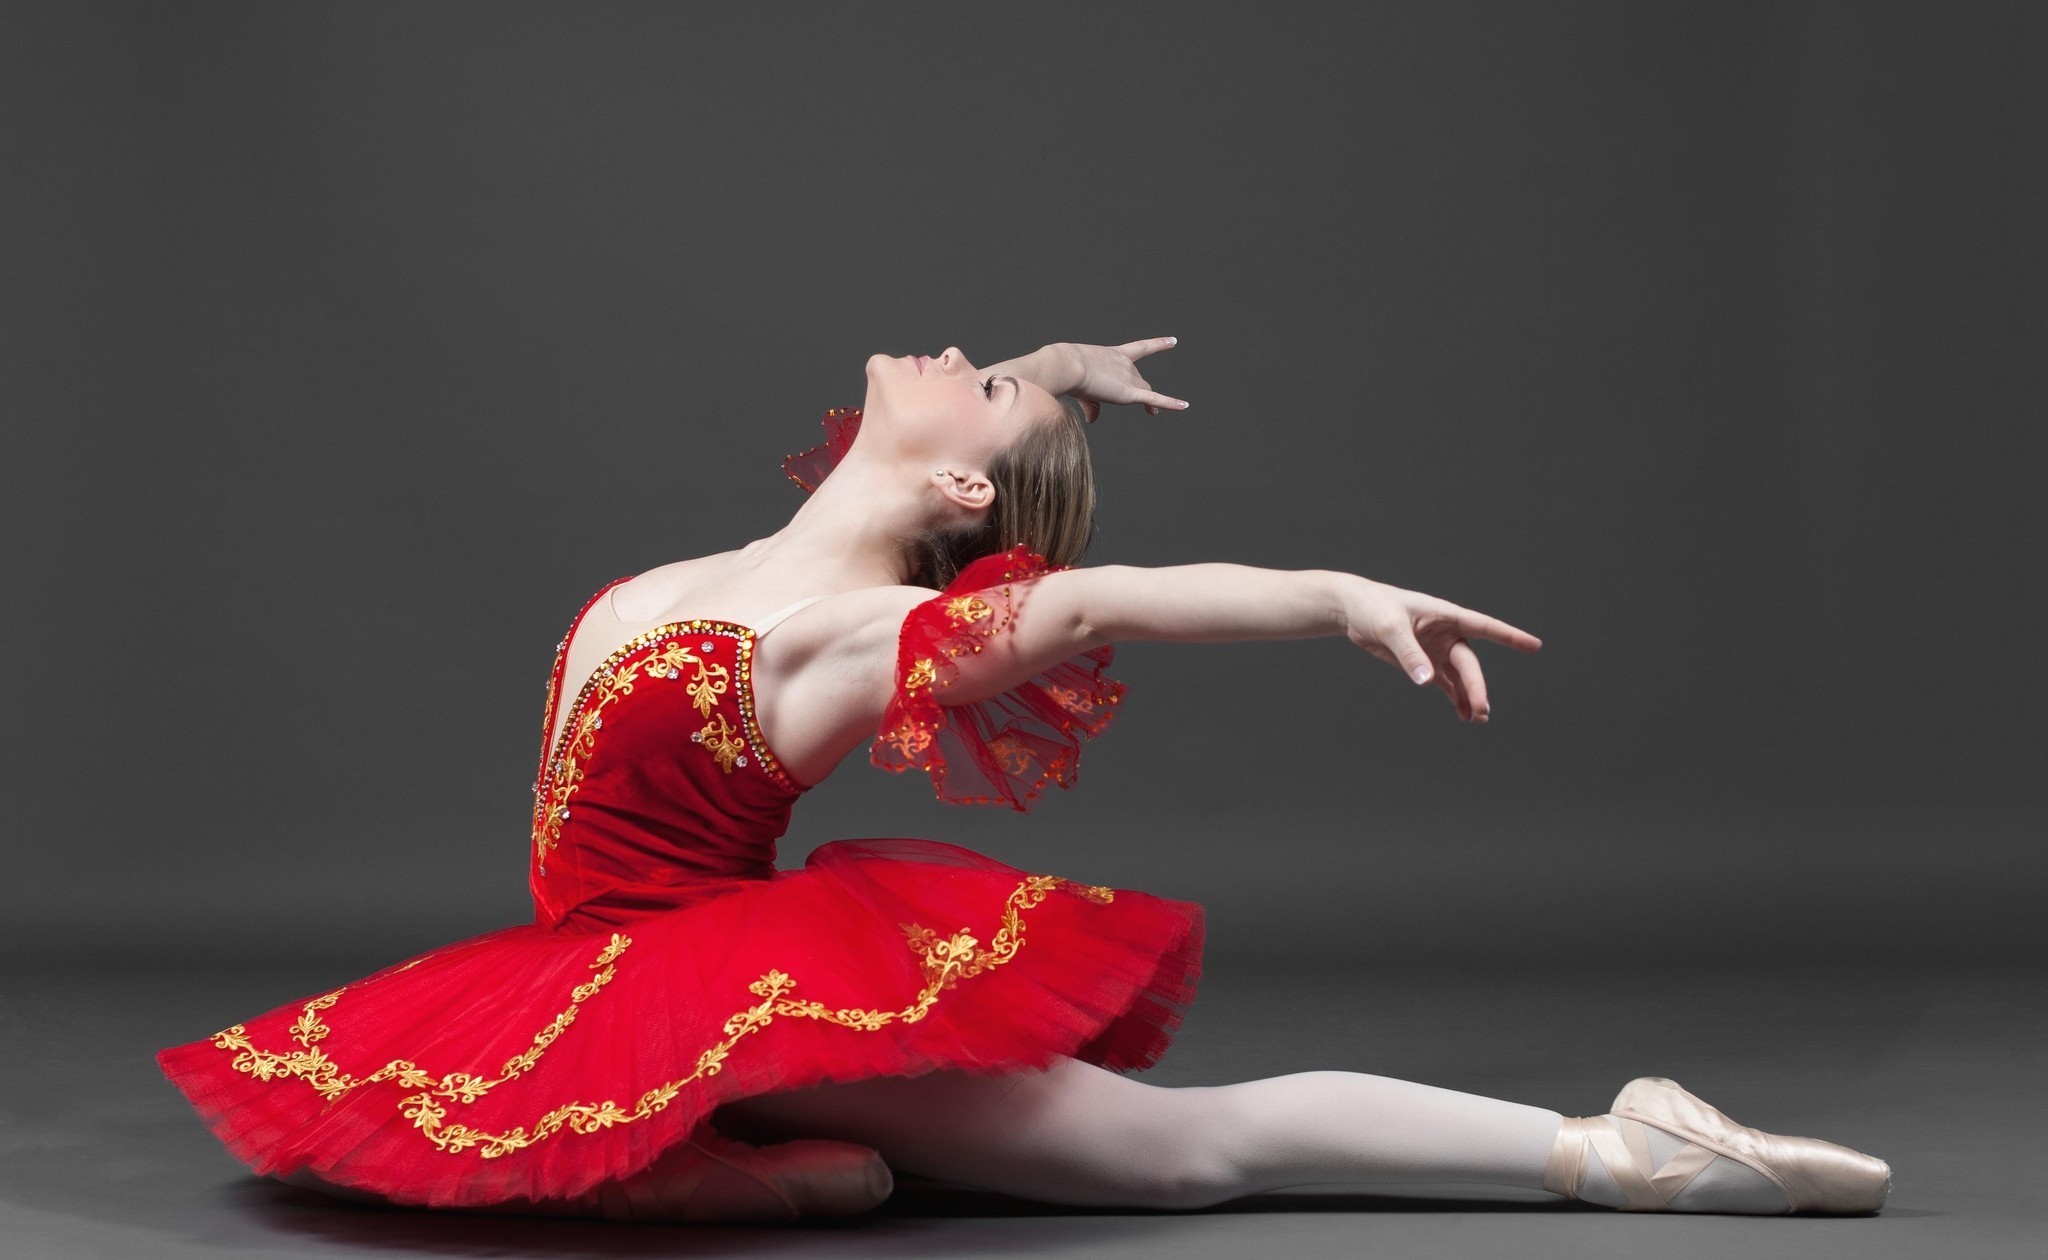 Ballerina Women Dancing Dancer Red Dress Wallpaper - Resolution ...